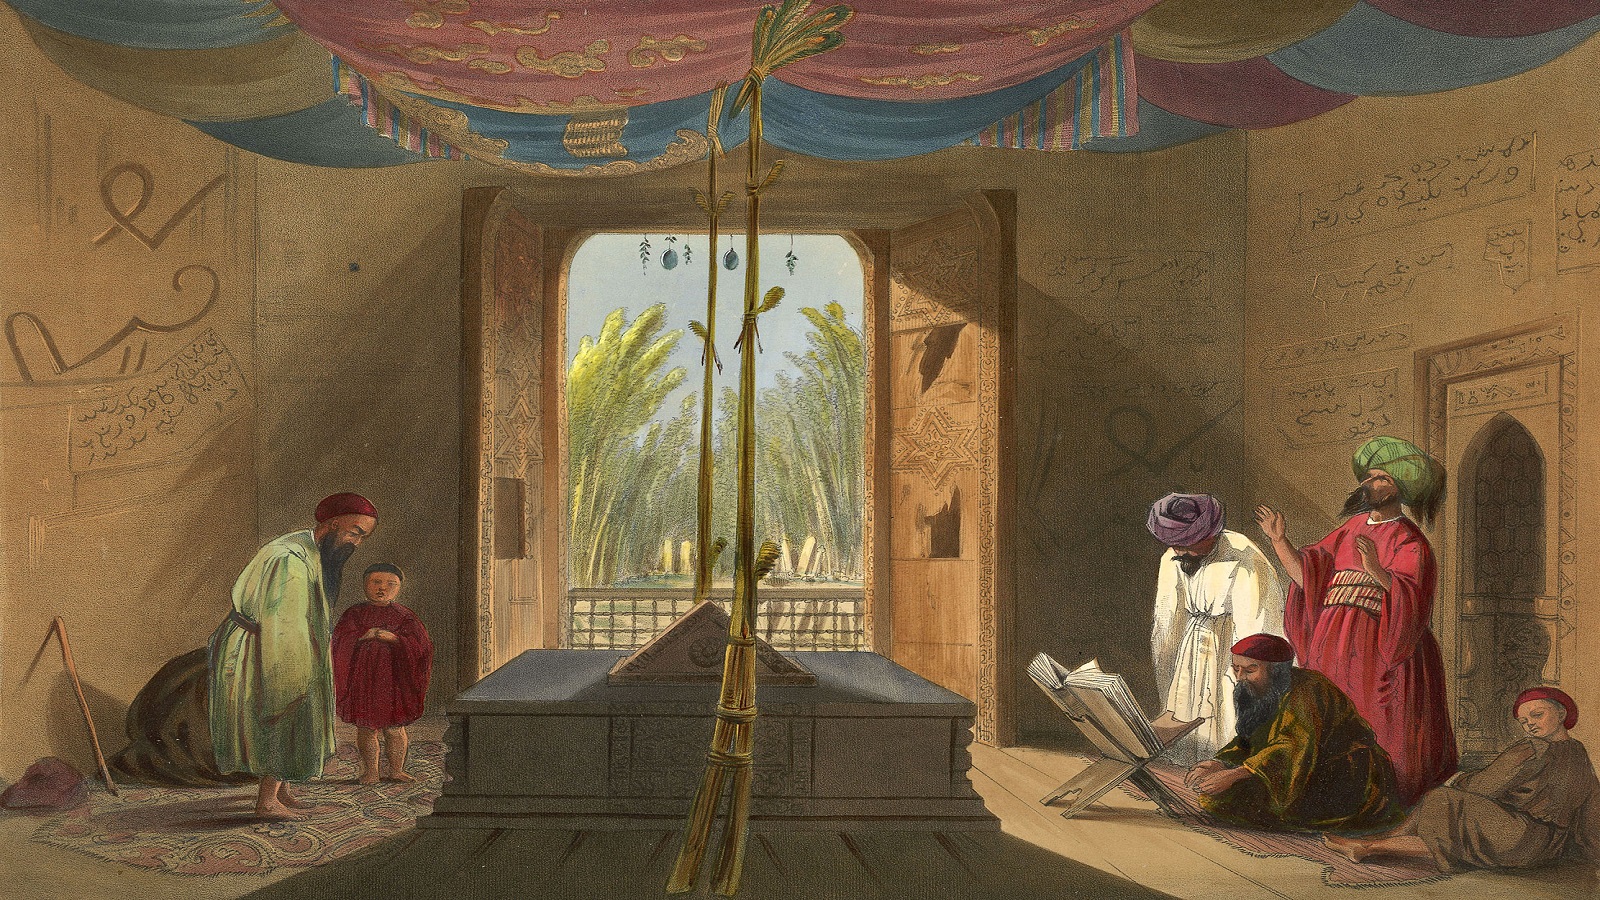 ضريح السلطان محمود الغزنوي في غزنة، رسم طباعي بريطاني، 1840.